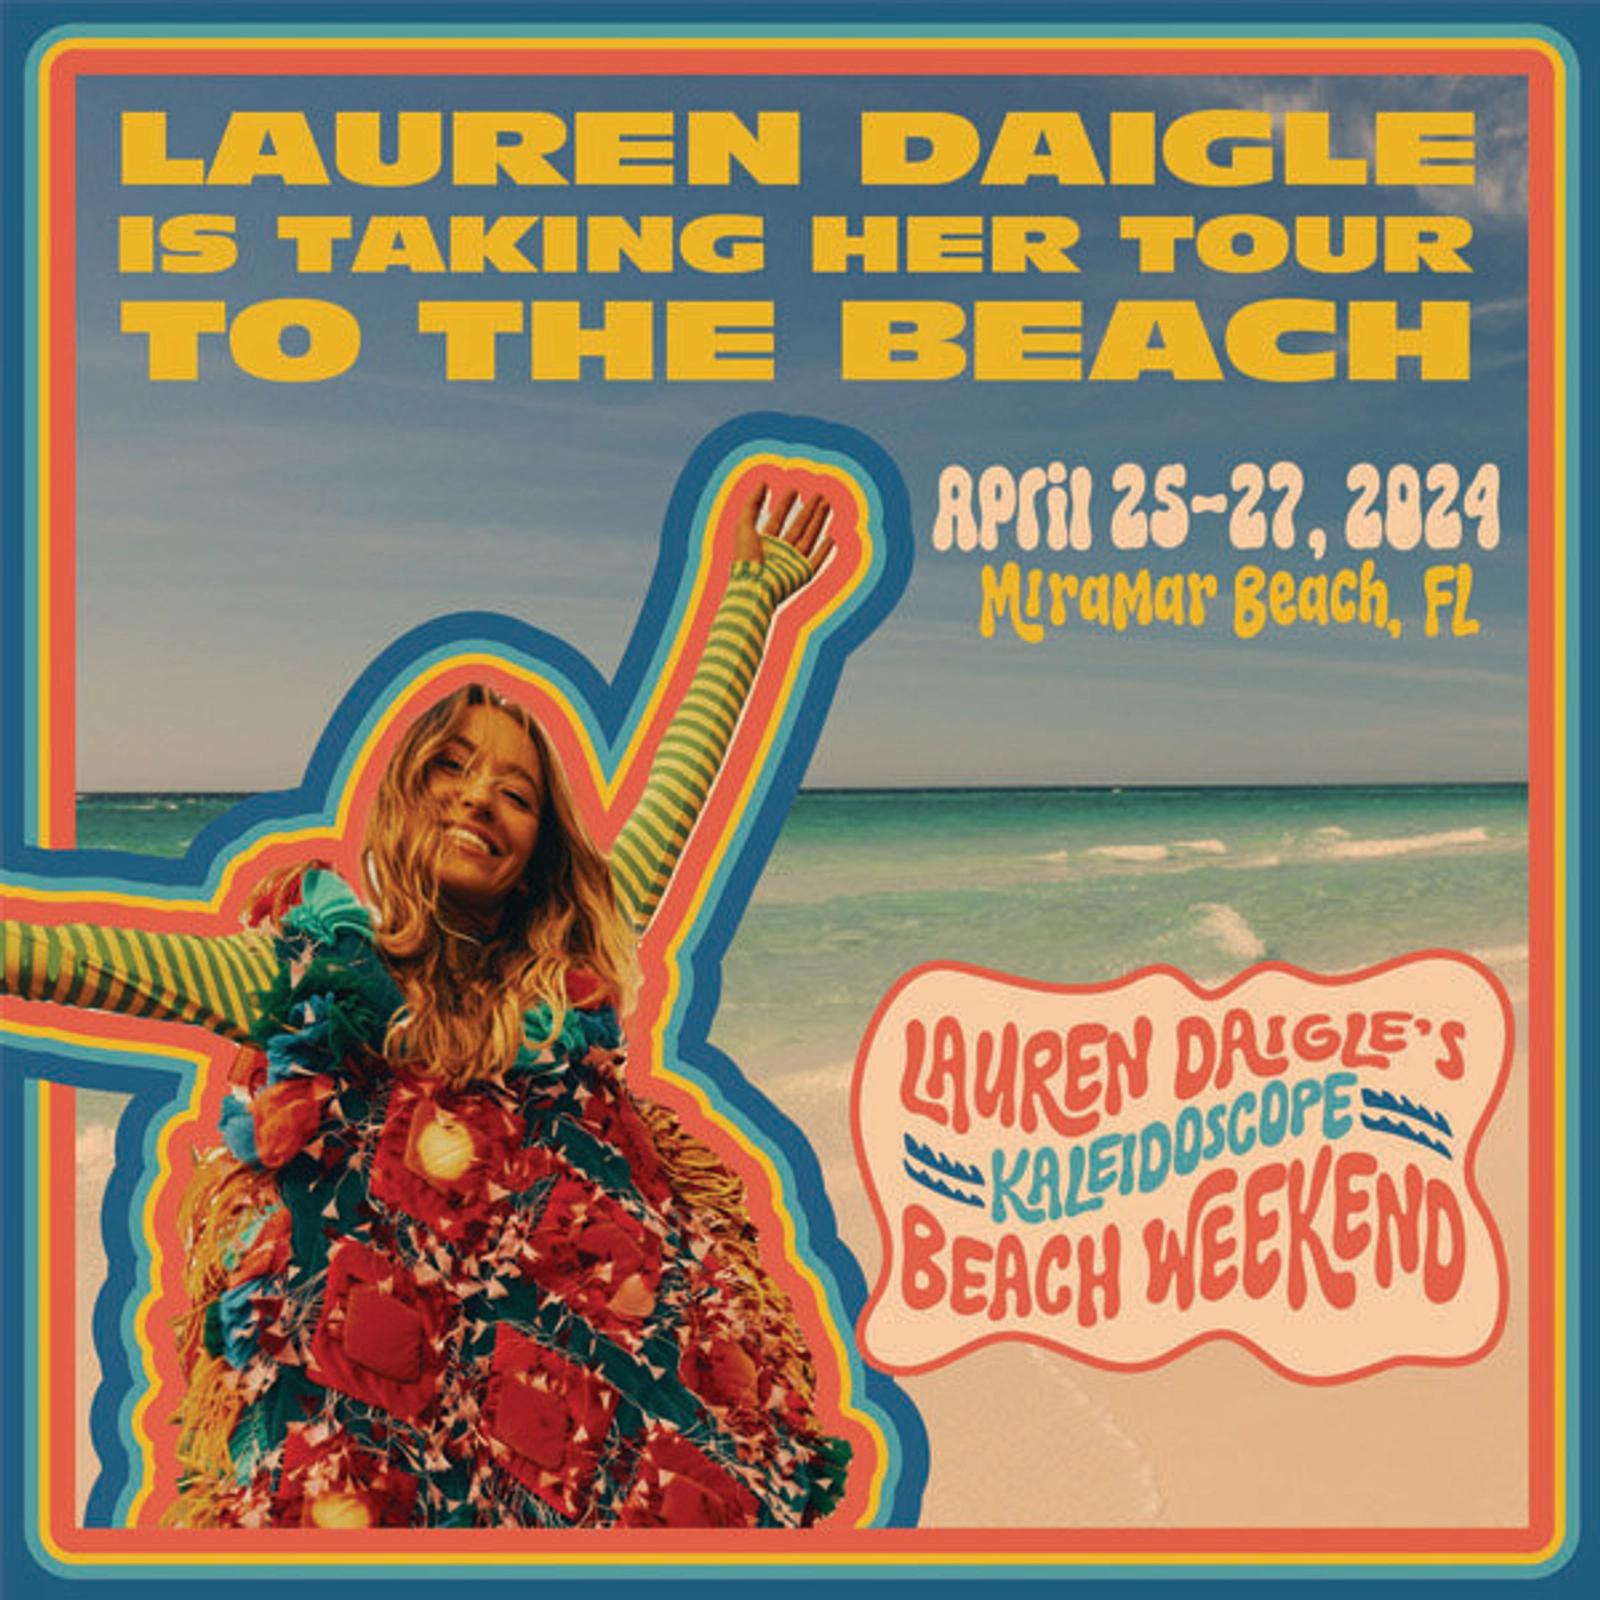 Lauren Daigle Kaleidoscope Beach Weekend in Florida